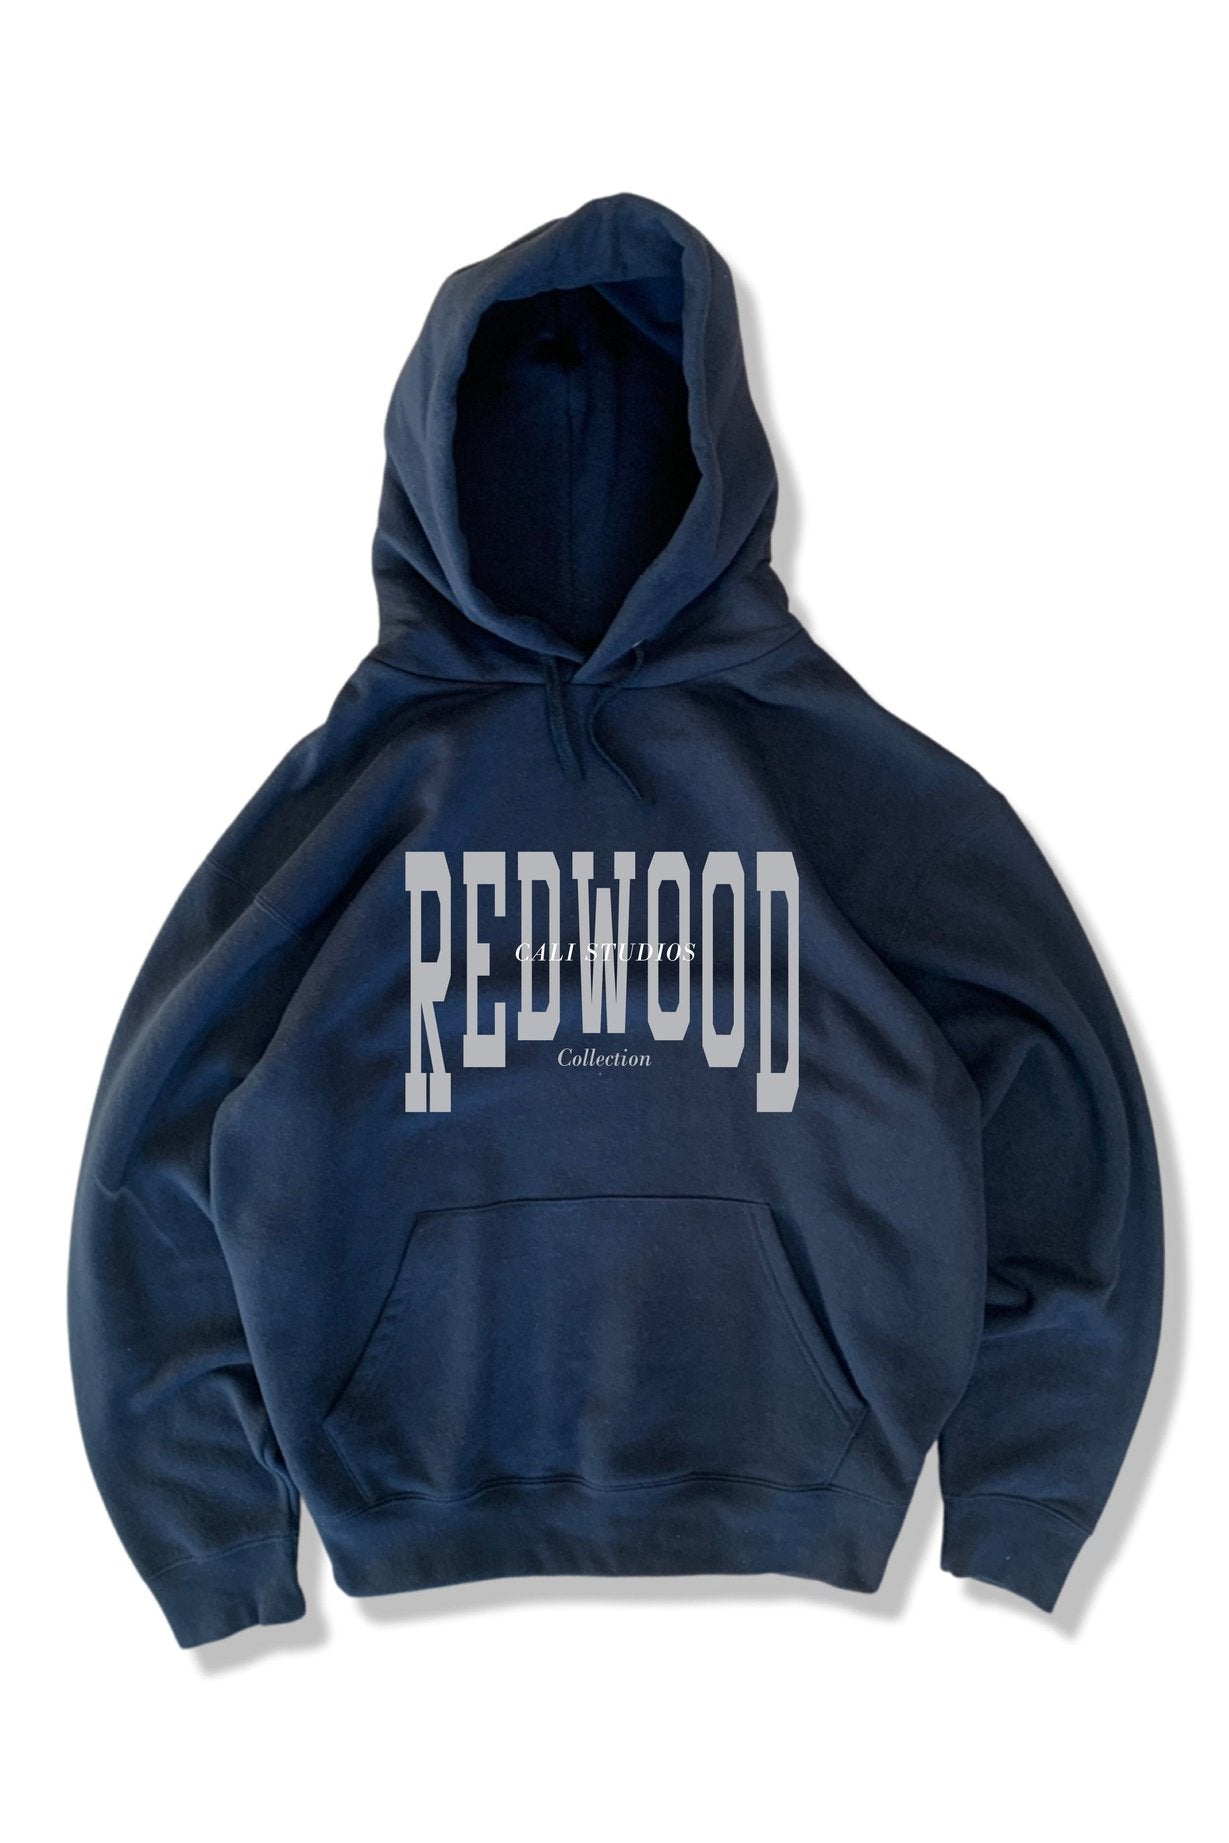 Redwood Hoodie - Black /Grey